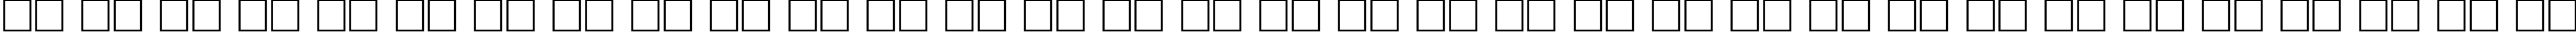 Пример написания русского алфавита шрифтом FrakturaTT